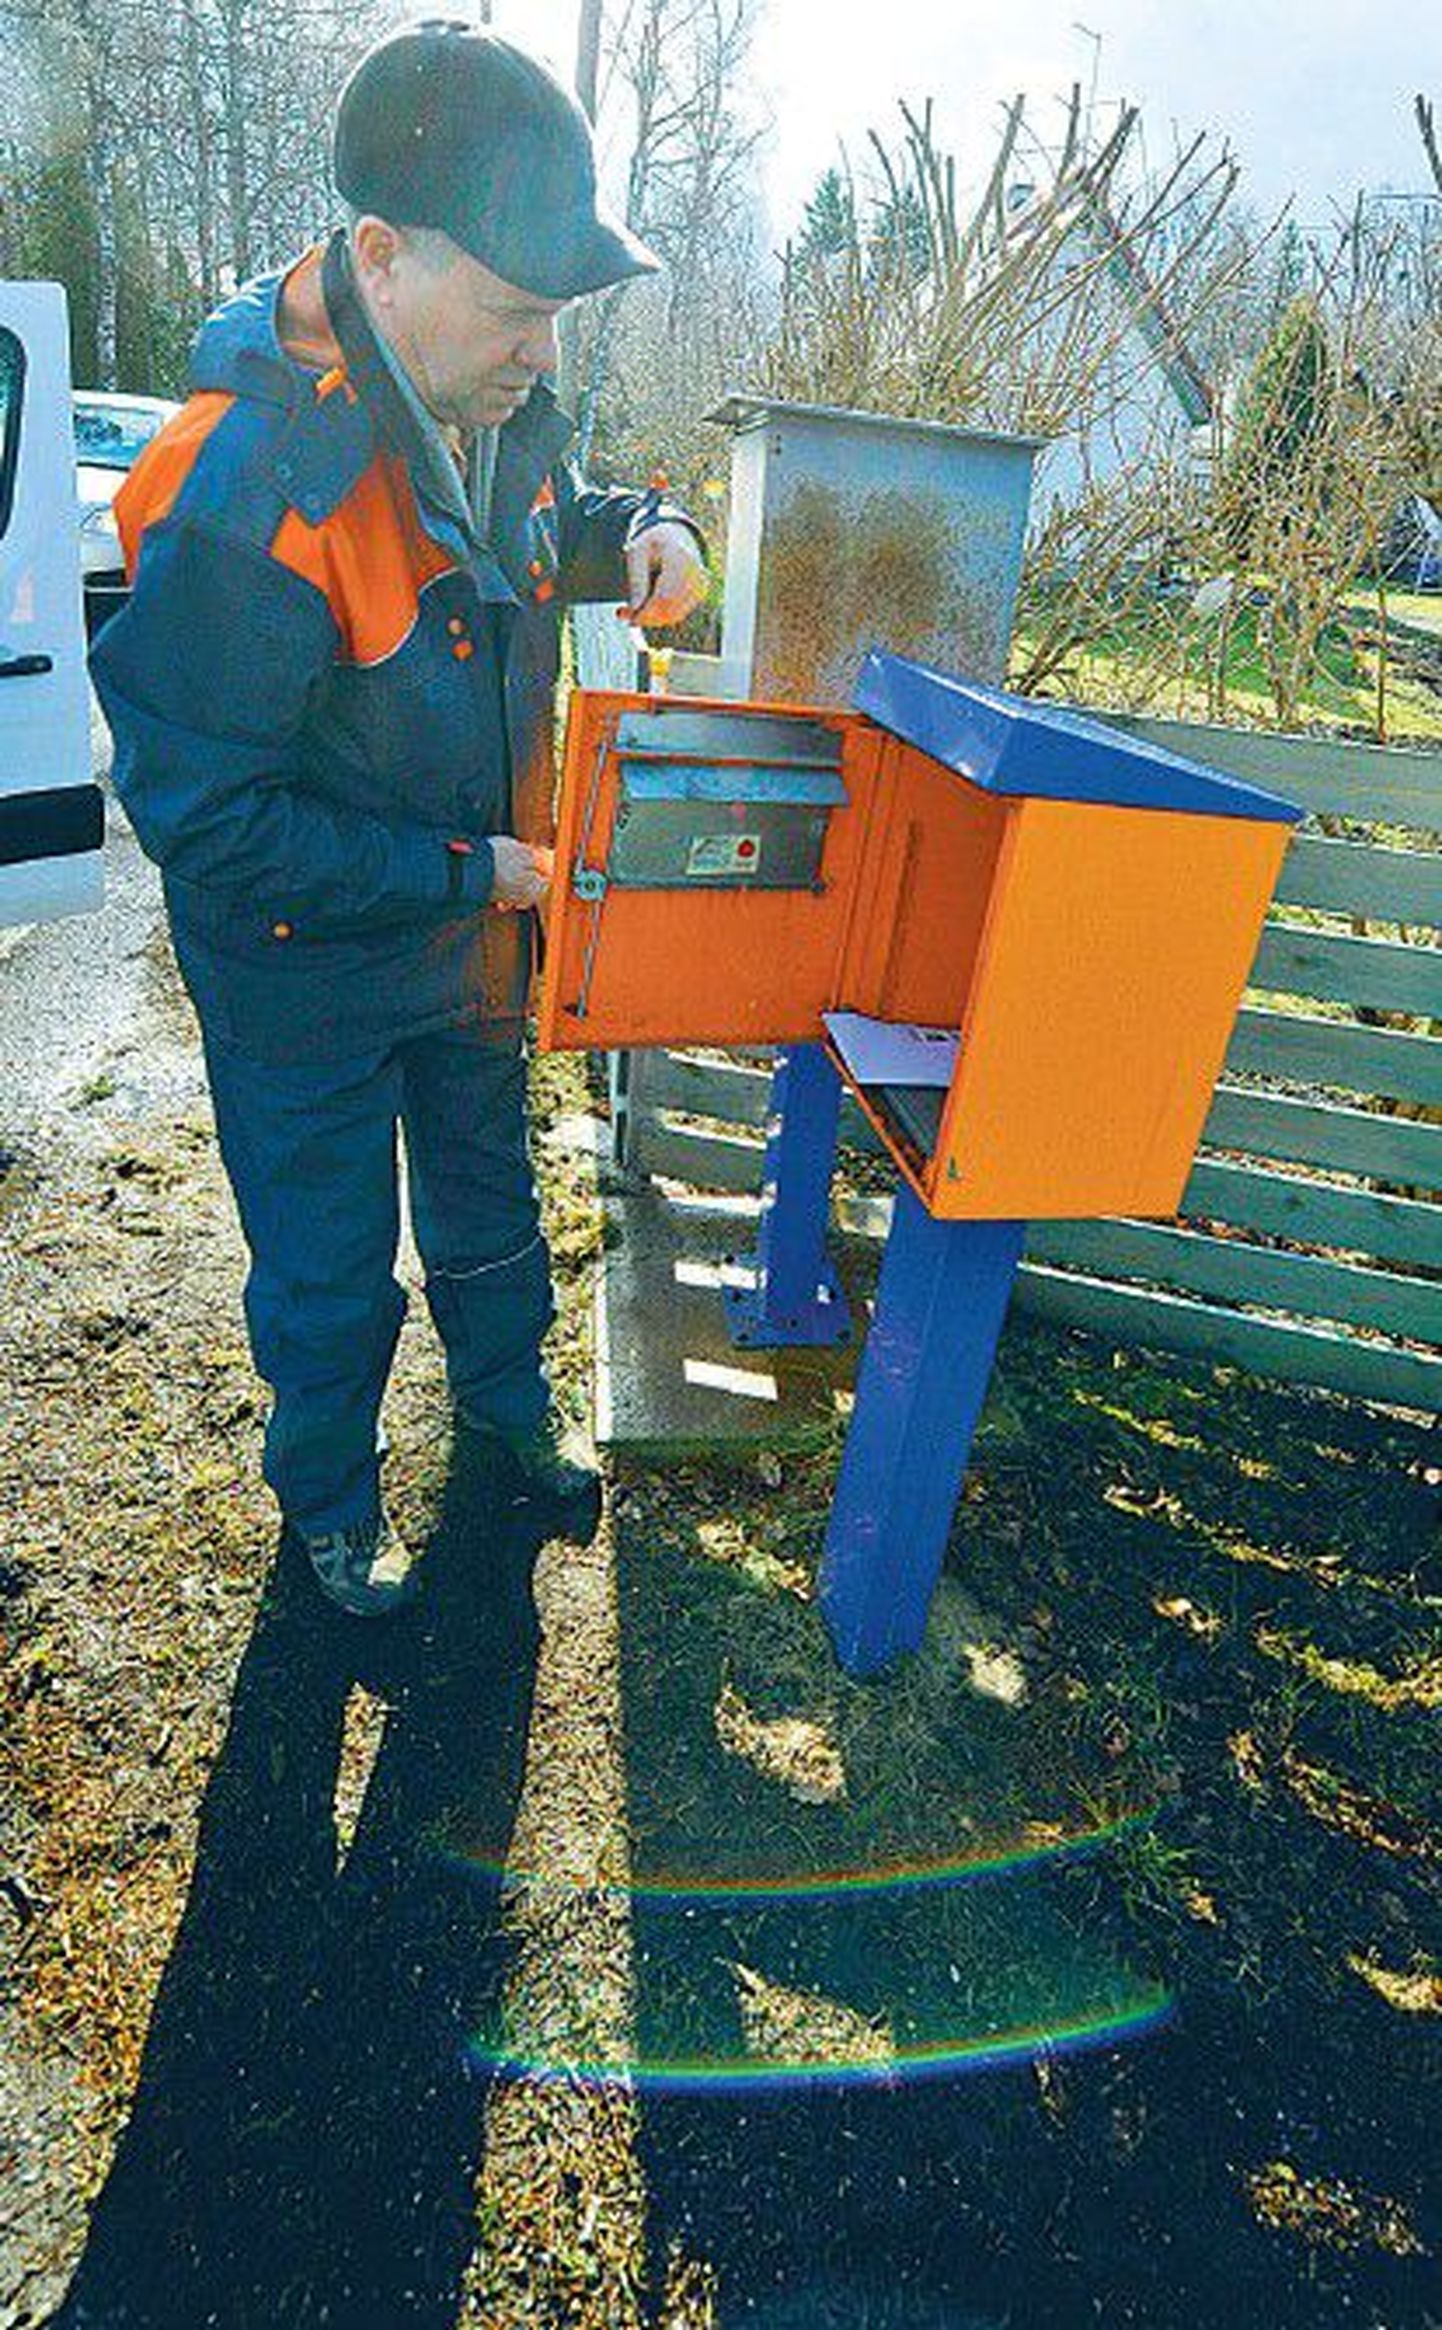 Вчера в Меривялья в Таллинне сотрудник Eesti Post Александр Шобак выполнял свою обычную работу — освобождал почтовые ящики от скопившейся там корреспонденции.